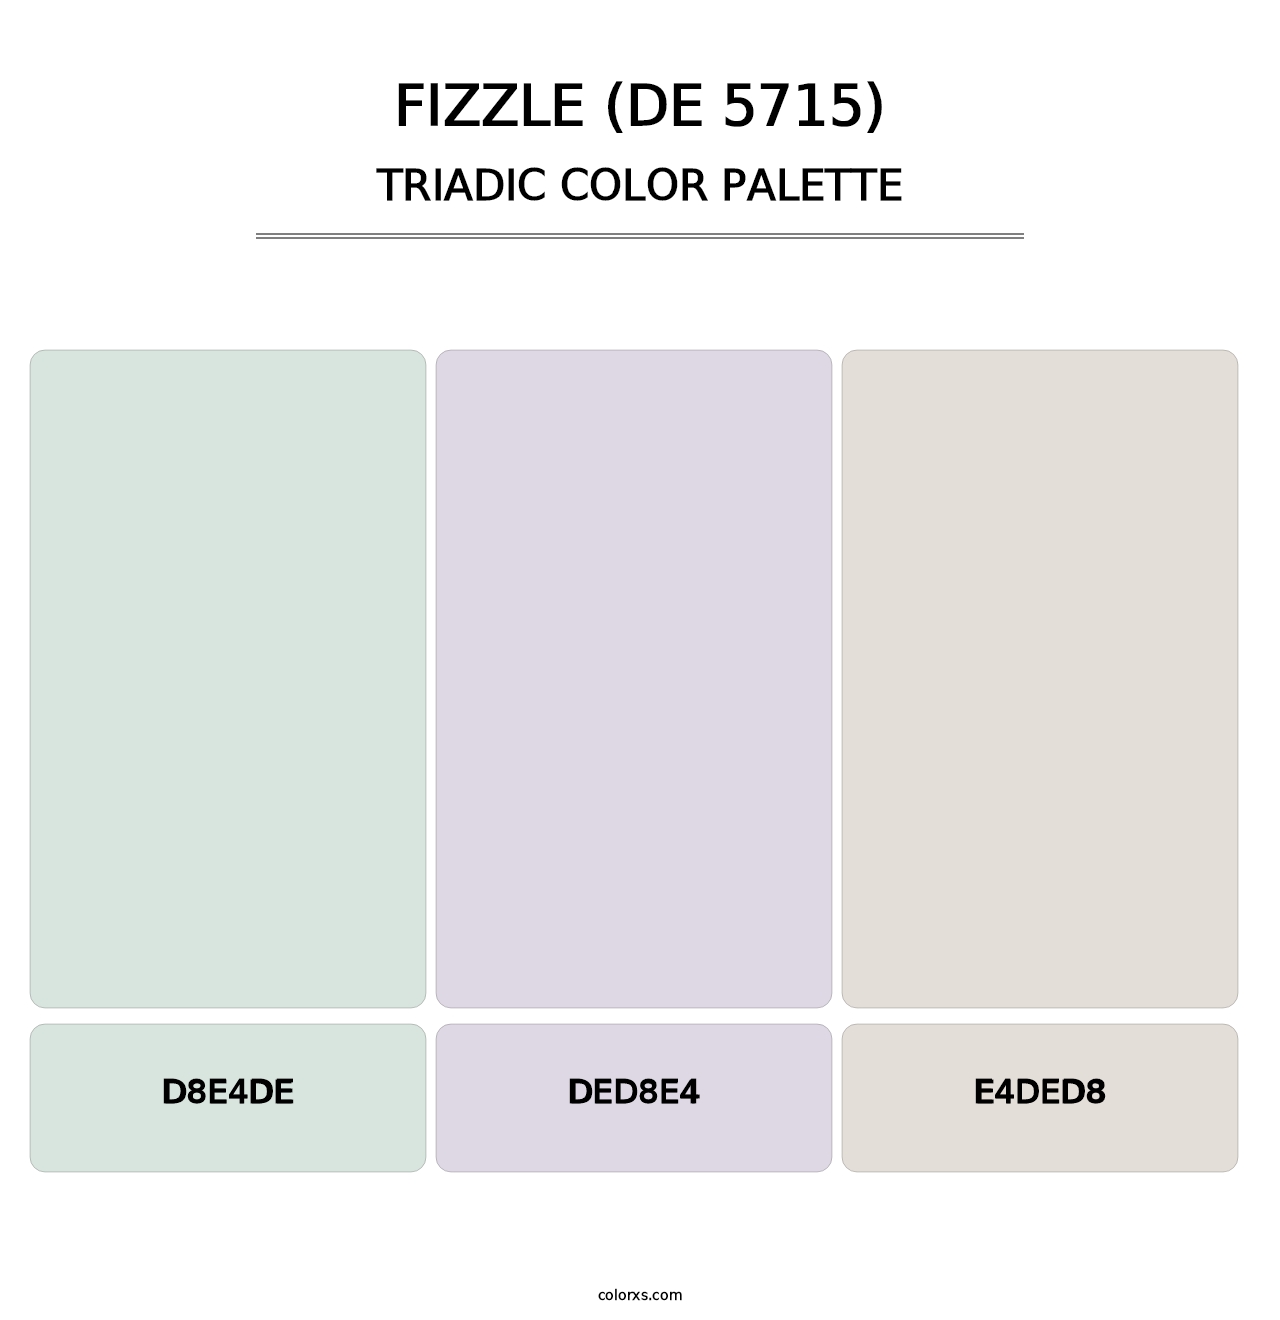 Fizzle (DE 5715) - Triadic Color Palette